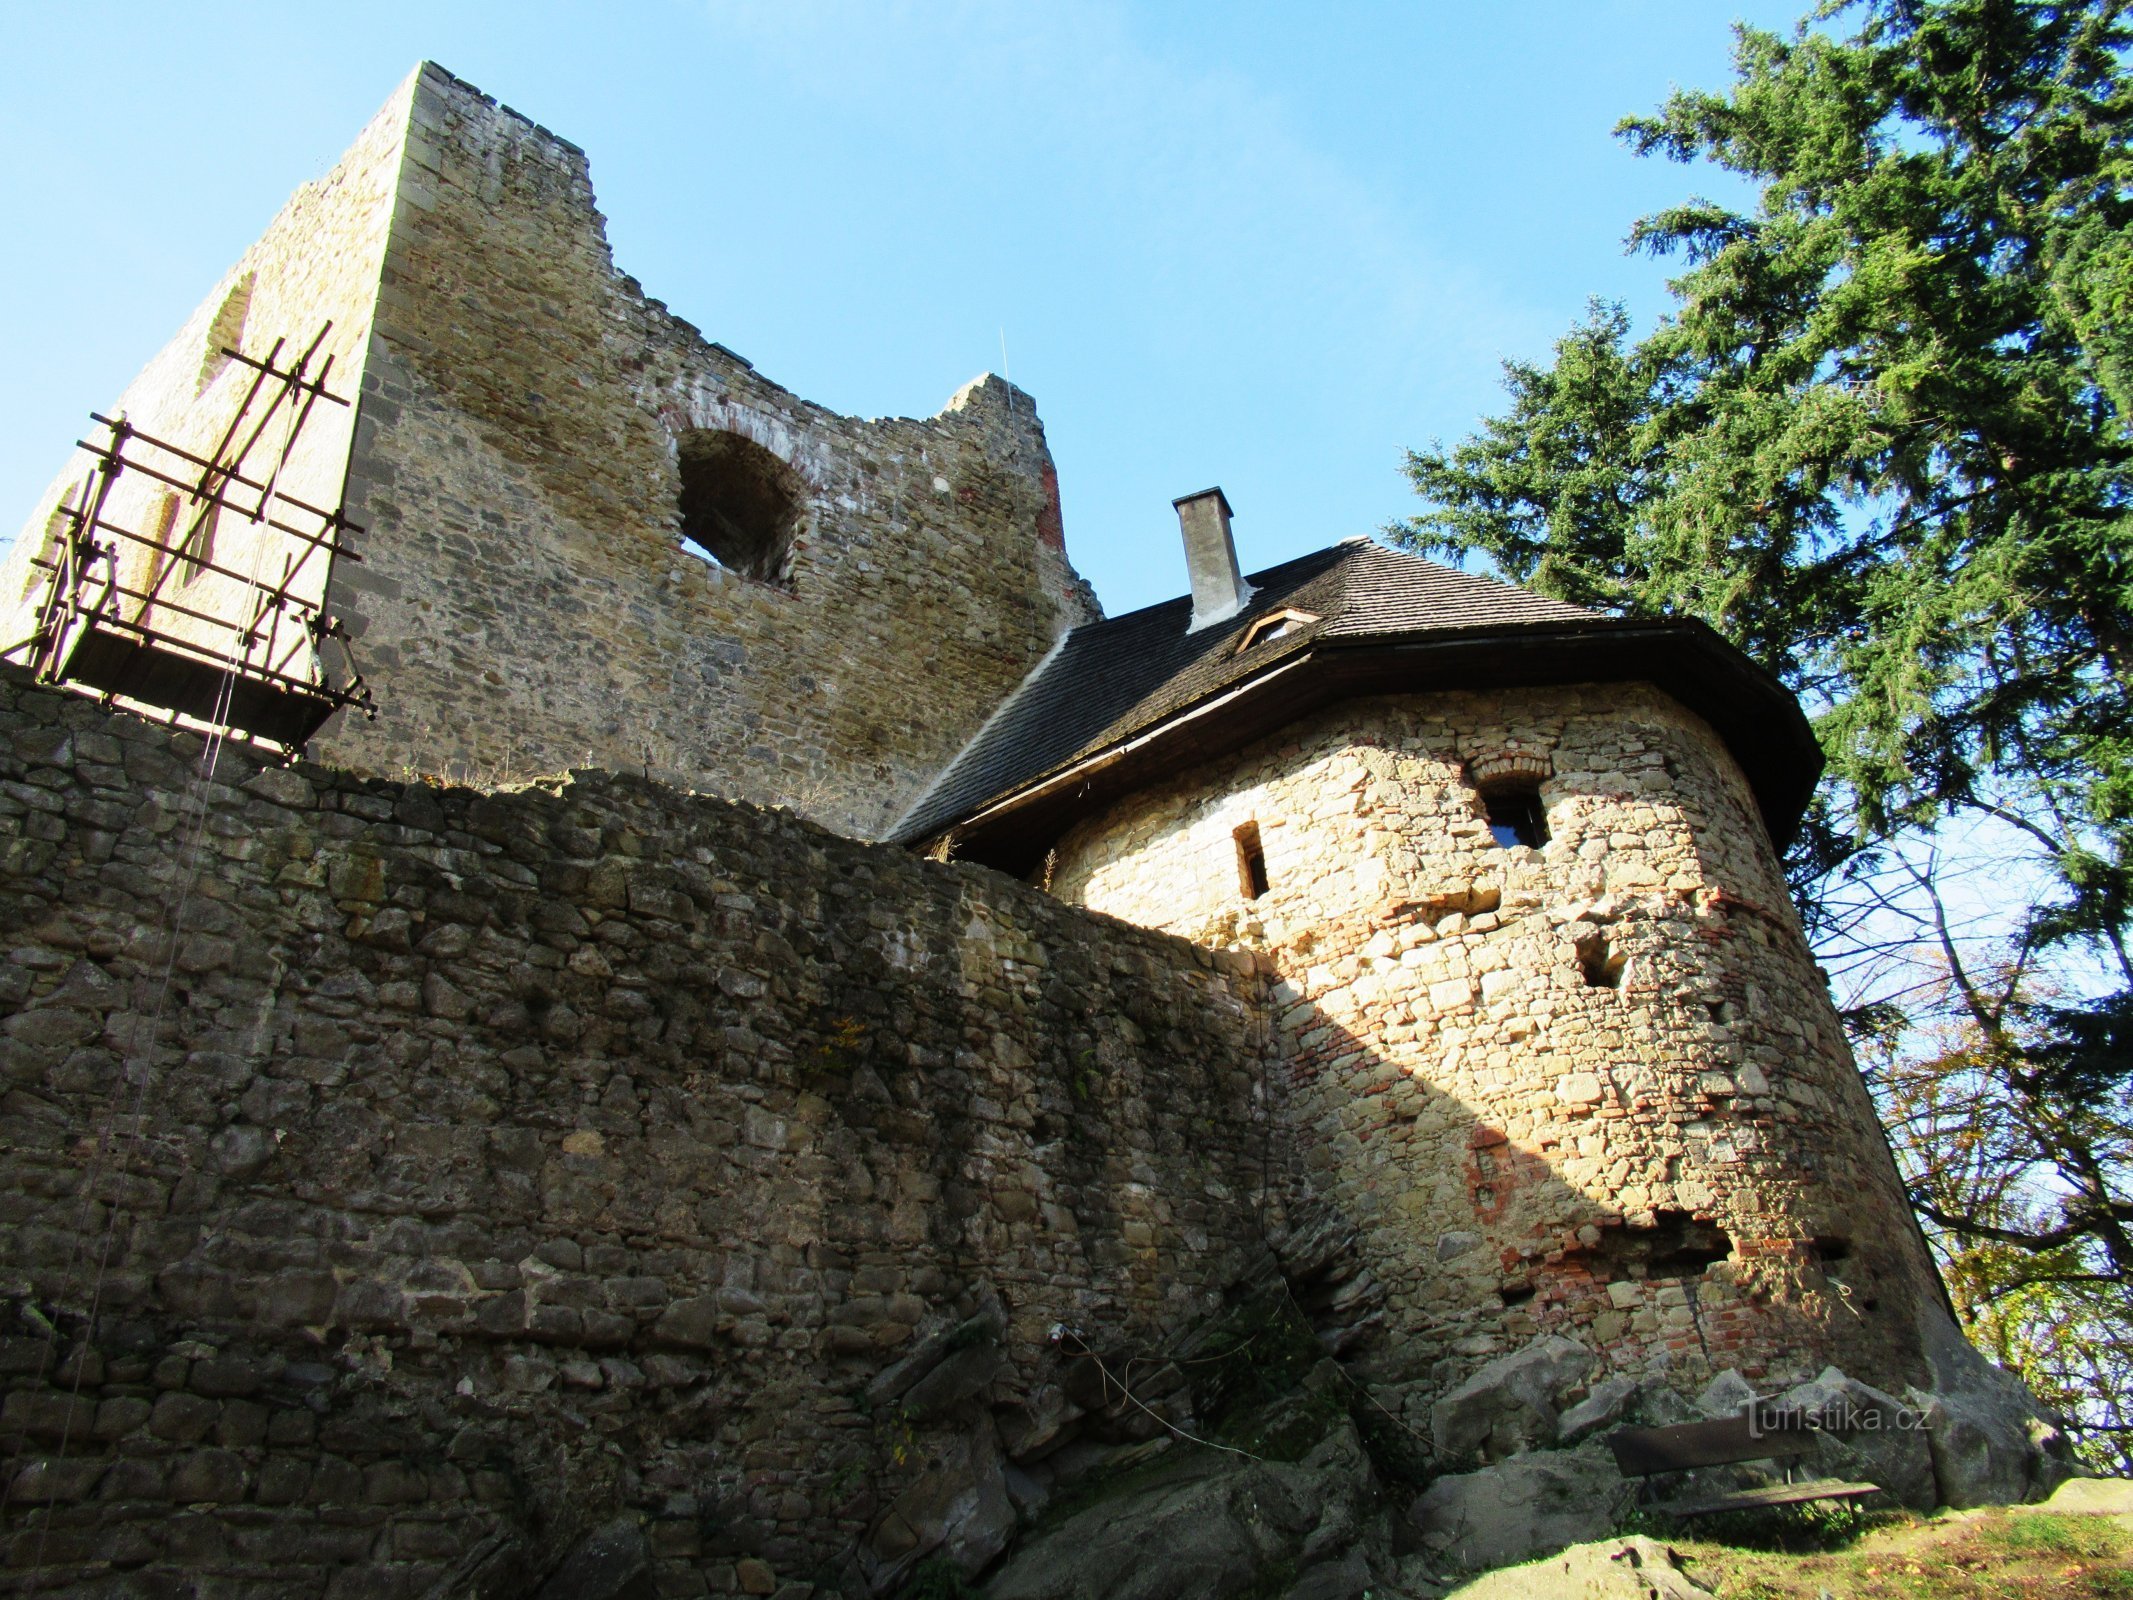 Uma surpresa no meio da floresta - nos passos do gótico francês ao Castelo de Cimburk